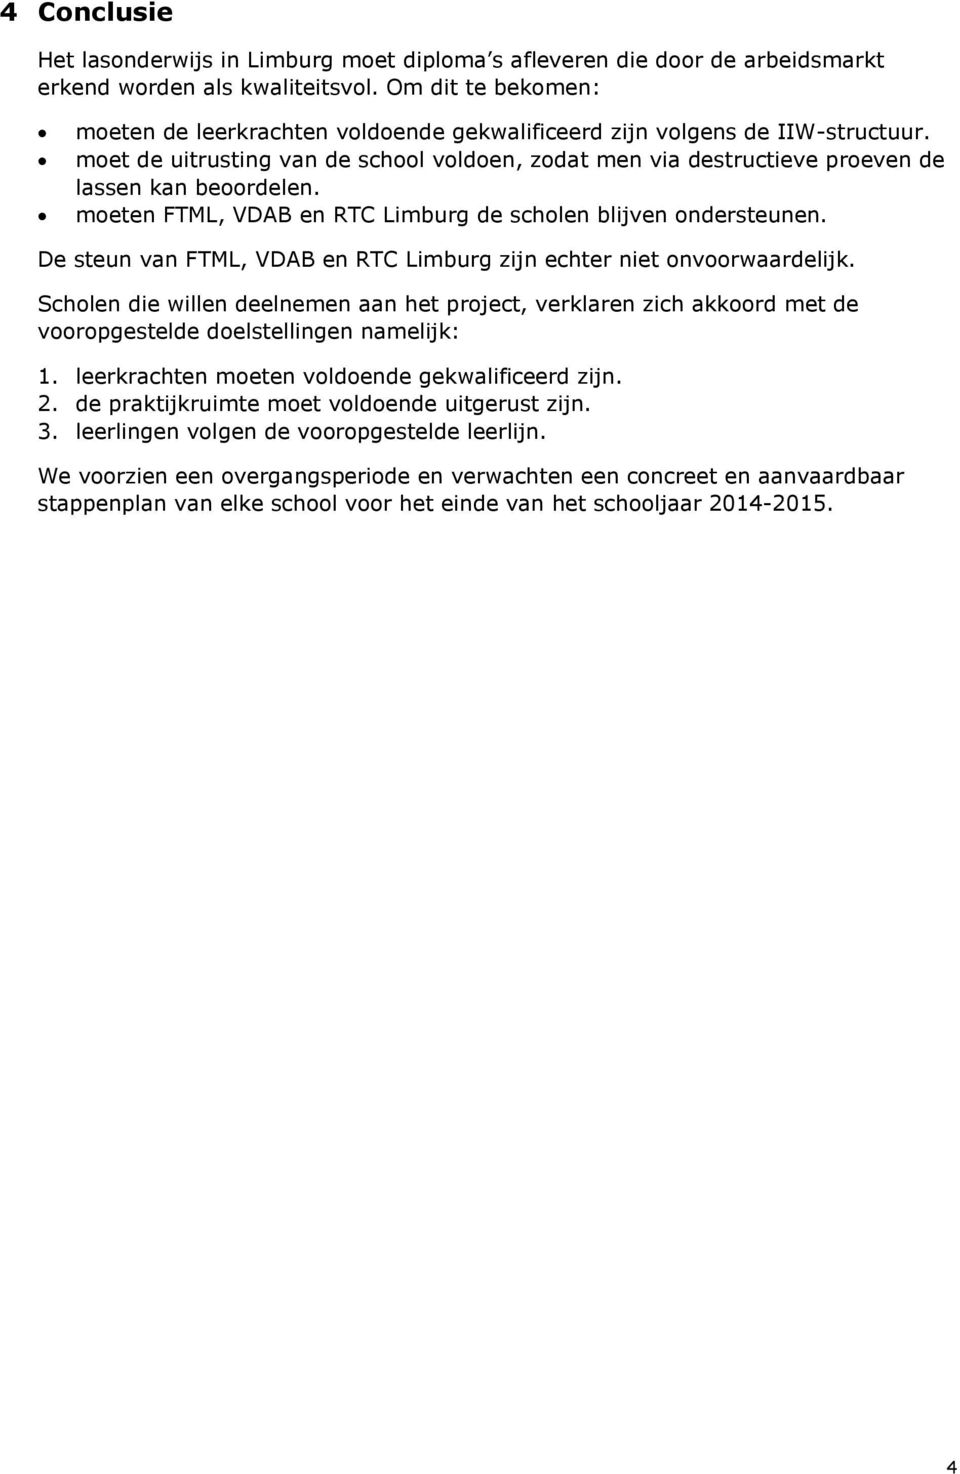 moeten FTML, VDAB en RTC Limburg de scholen blijven ondersteunen. De steun van FTML, VDAB en RTC Limburg zijn echter niet onvoorwaardelijk.